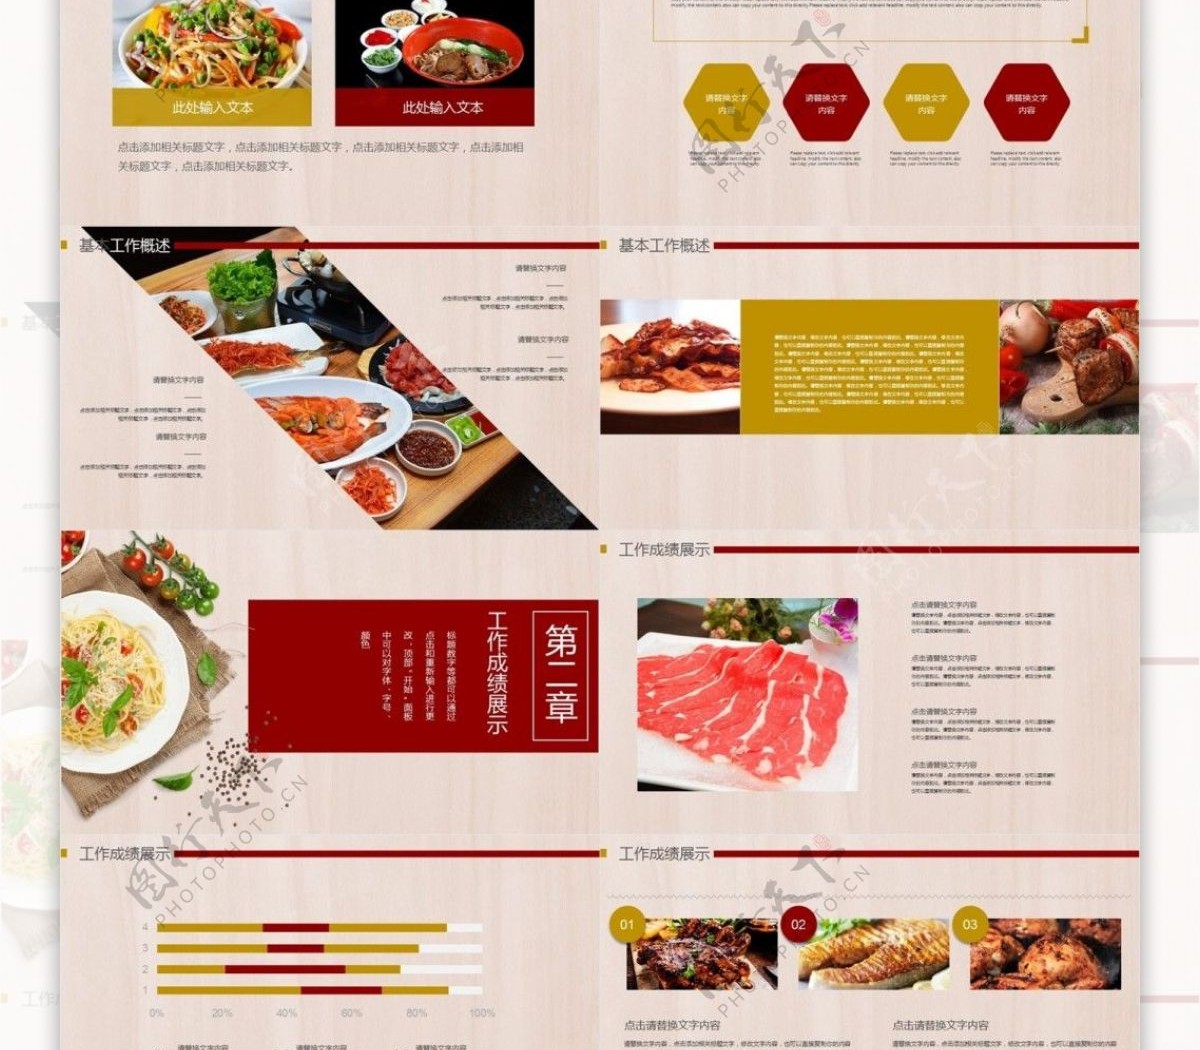 餐饮美食主题酒店餐厅宣传创意PPT模板